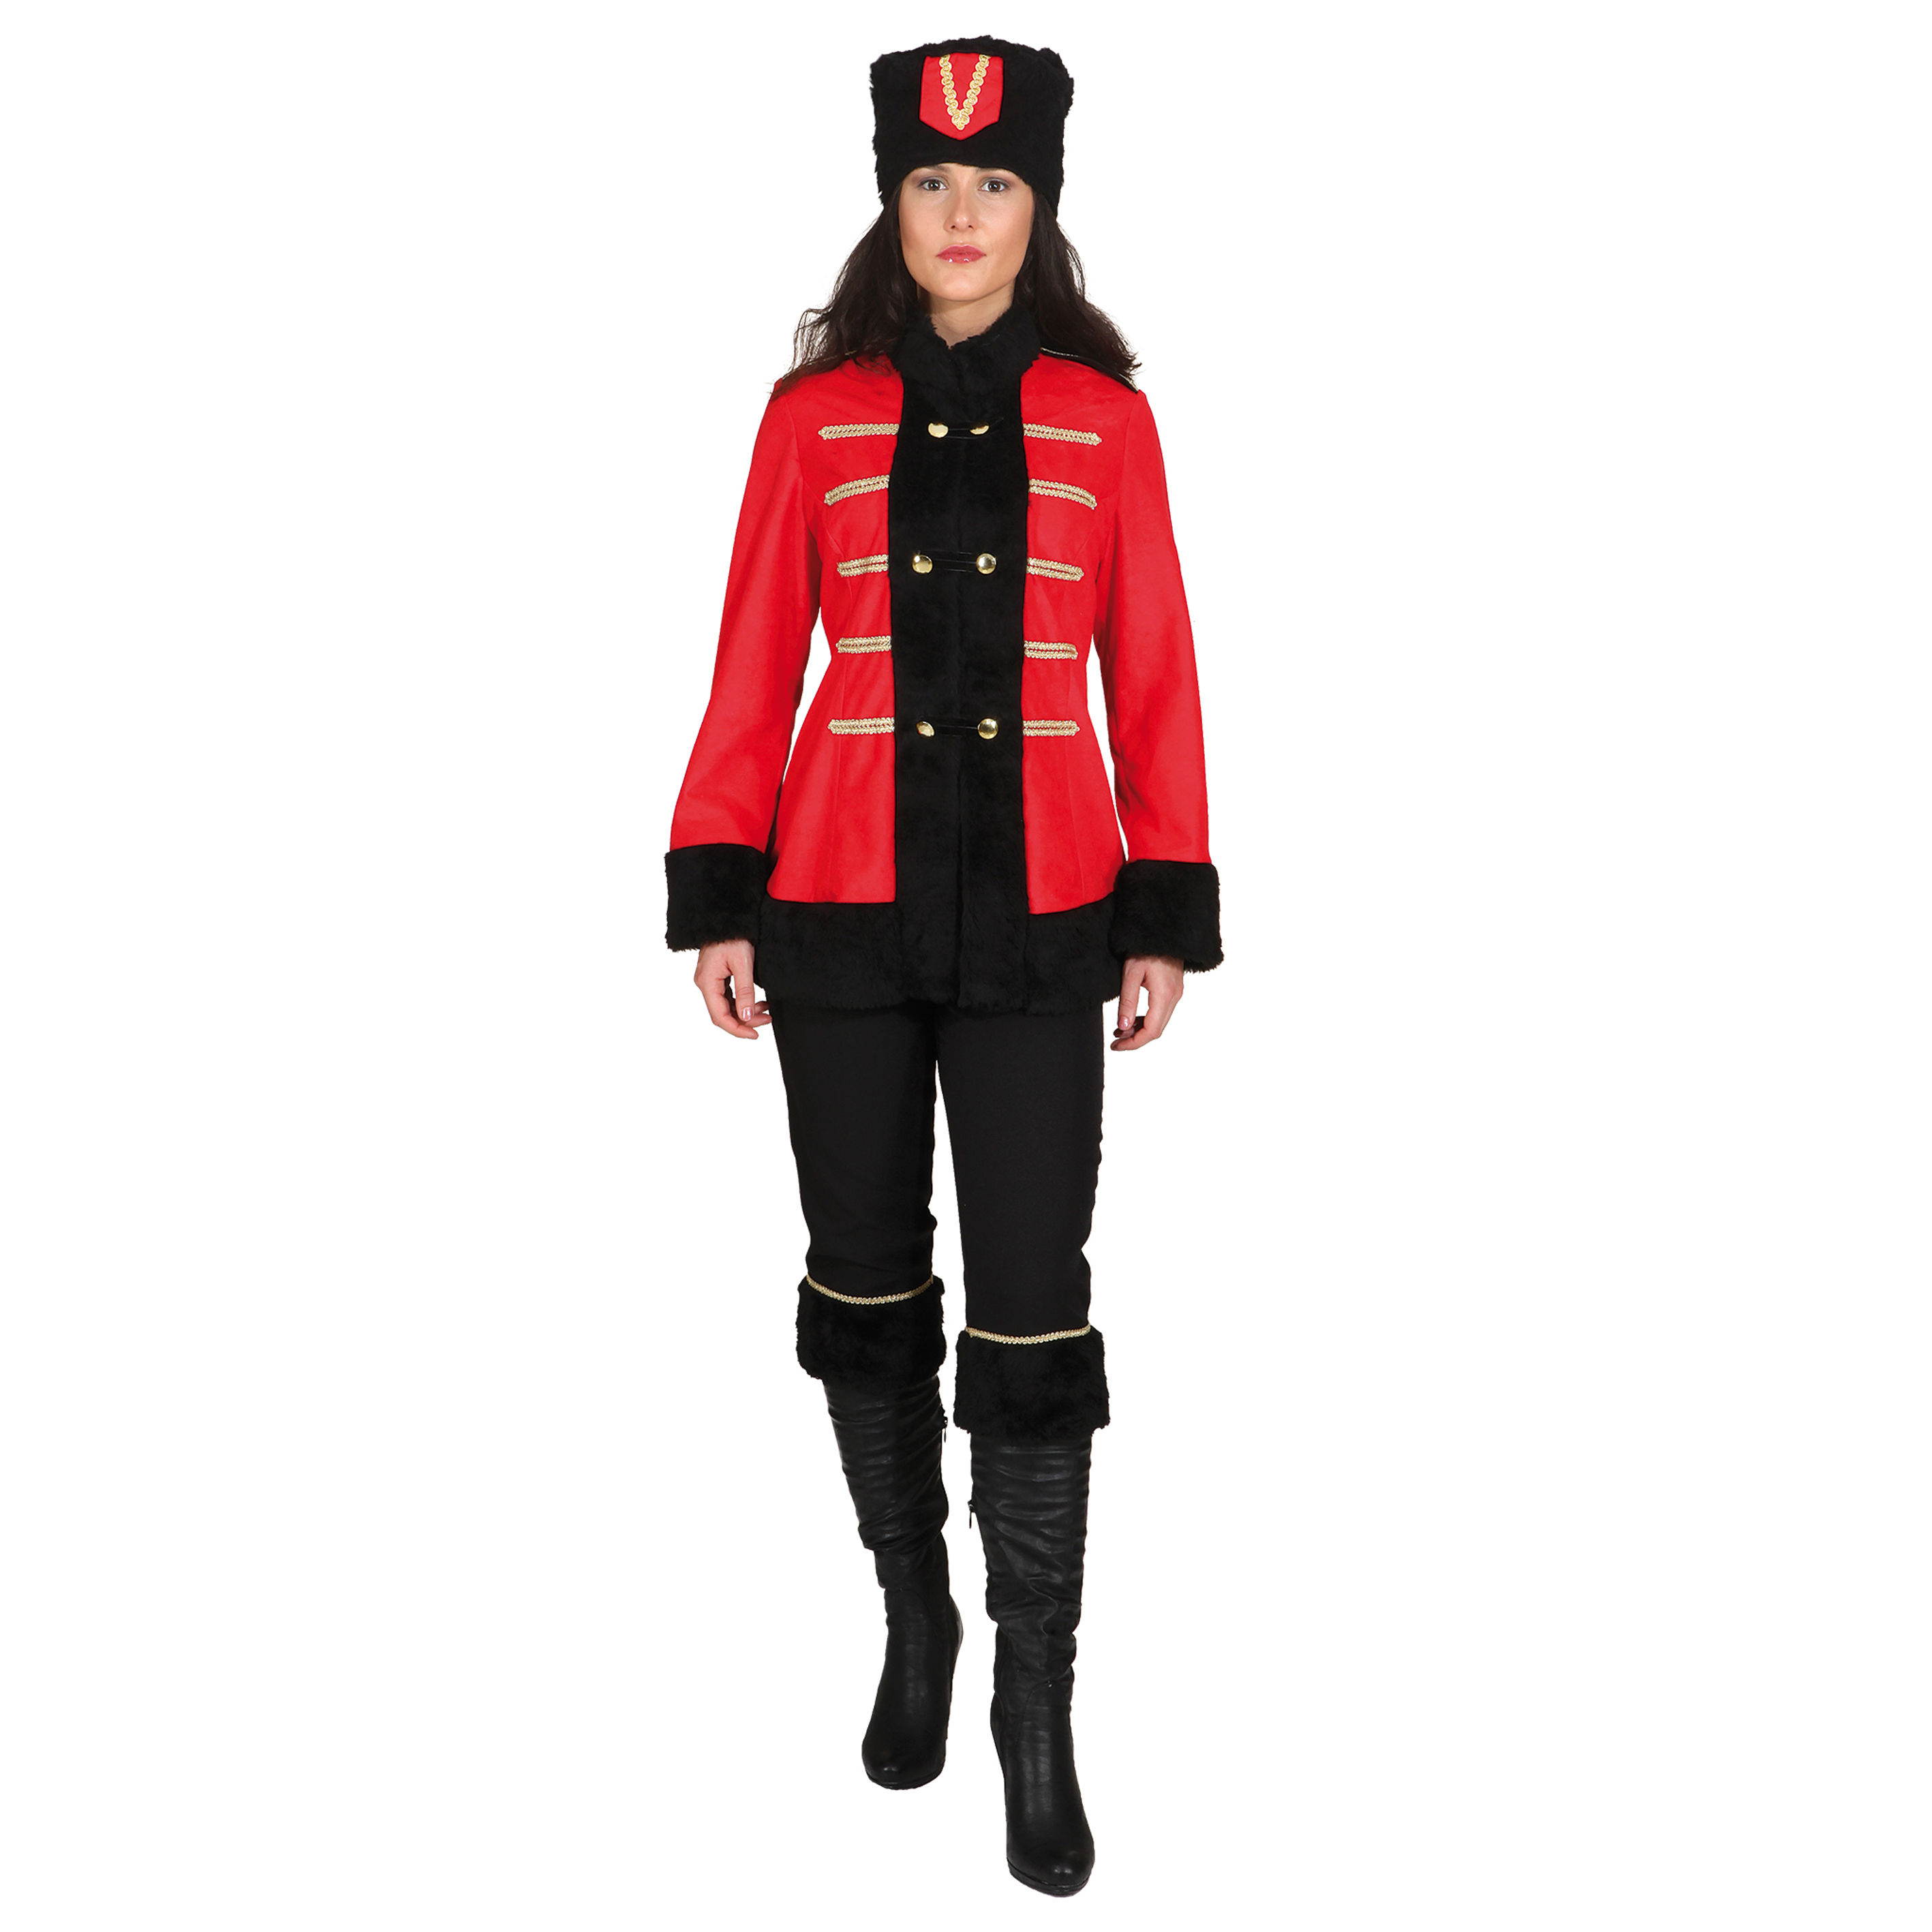 SALE Damen-Kostüm Kosakin, rot/schwarz, Gr. 44